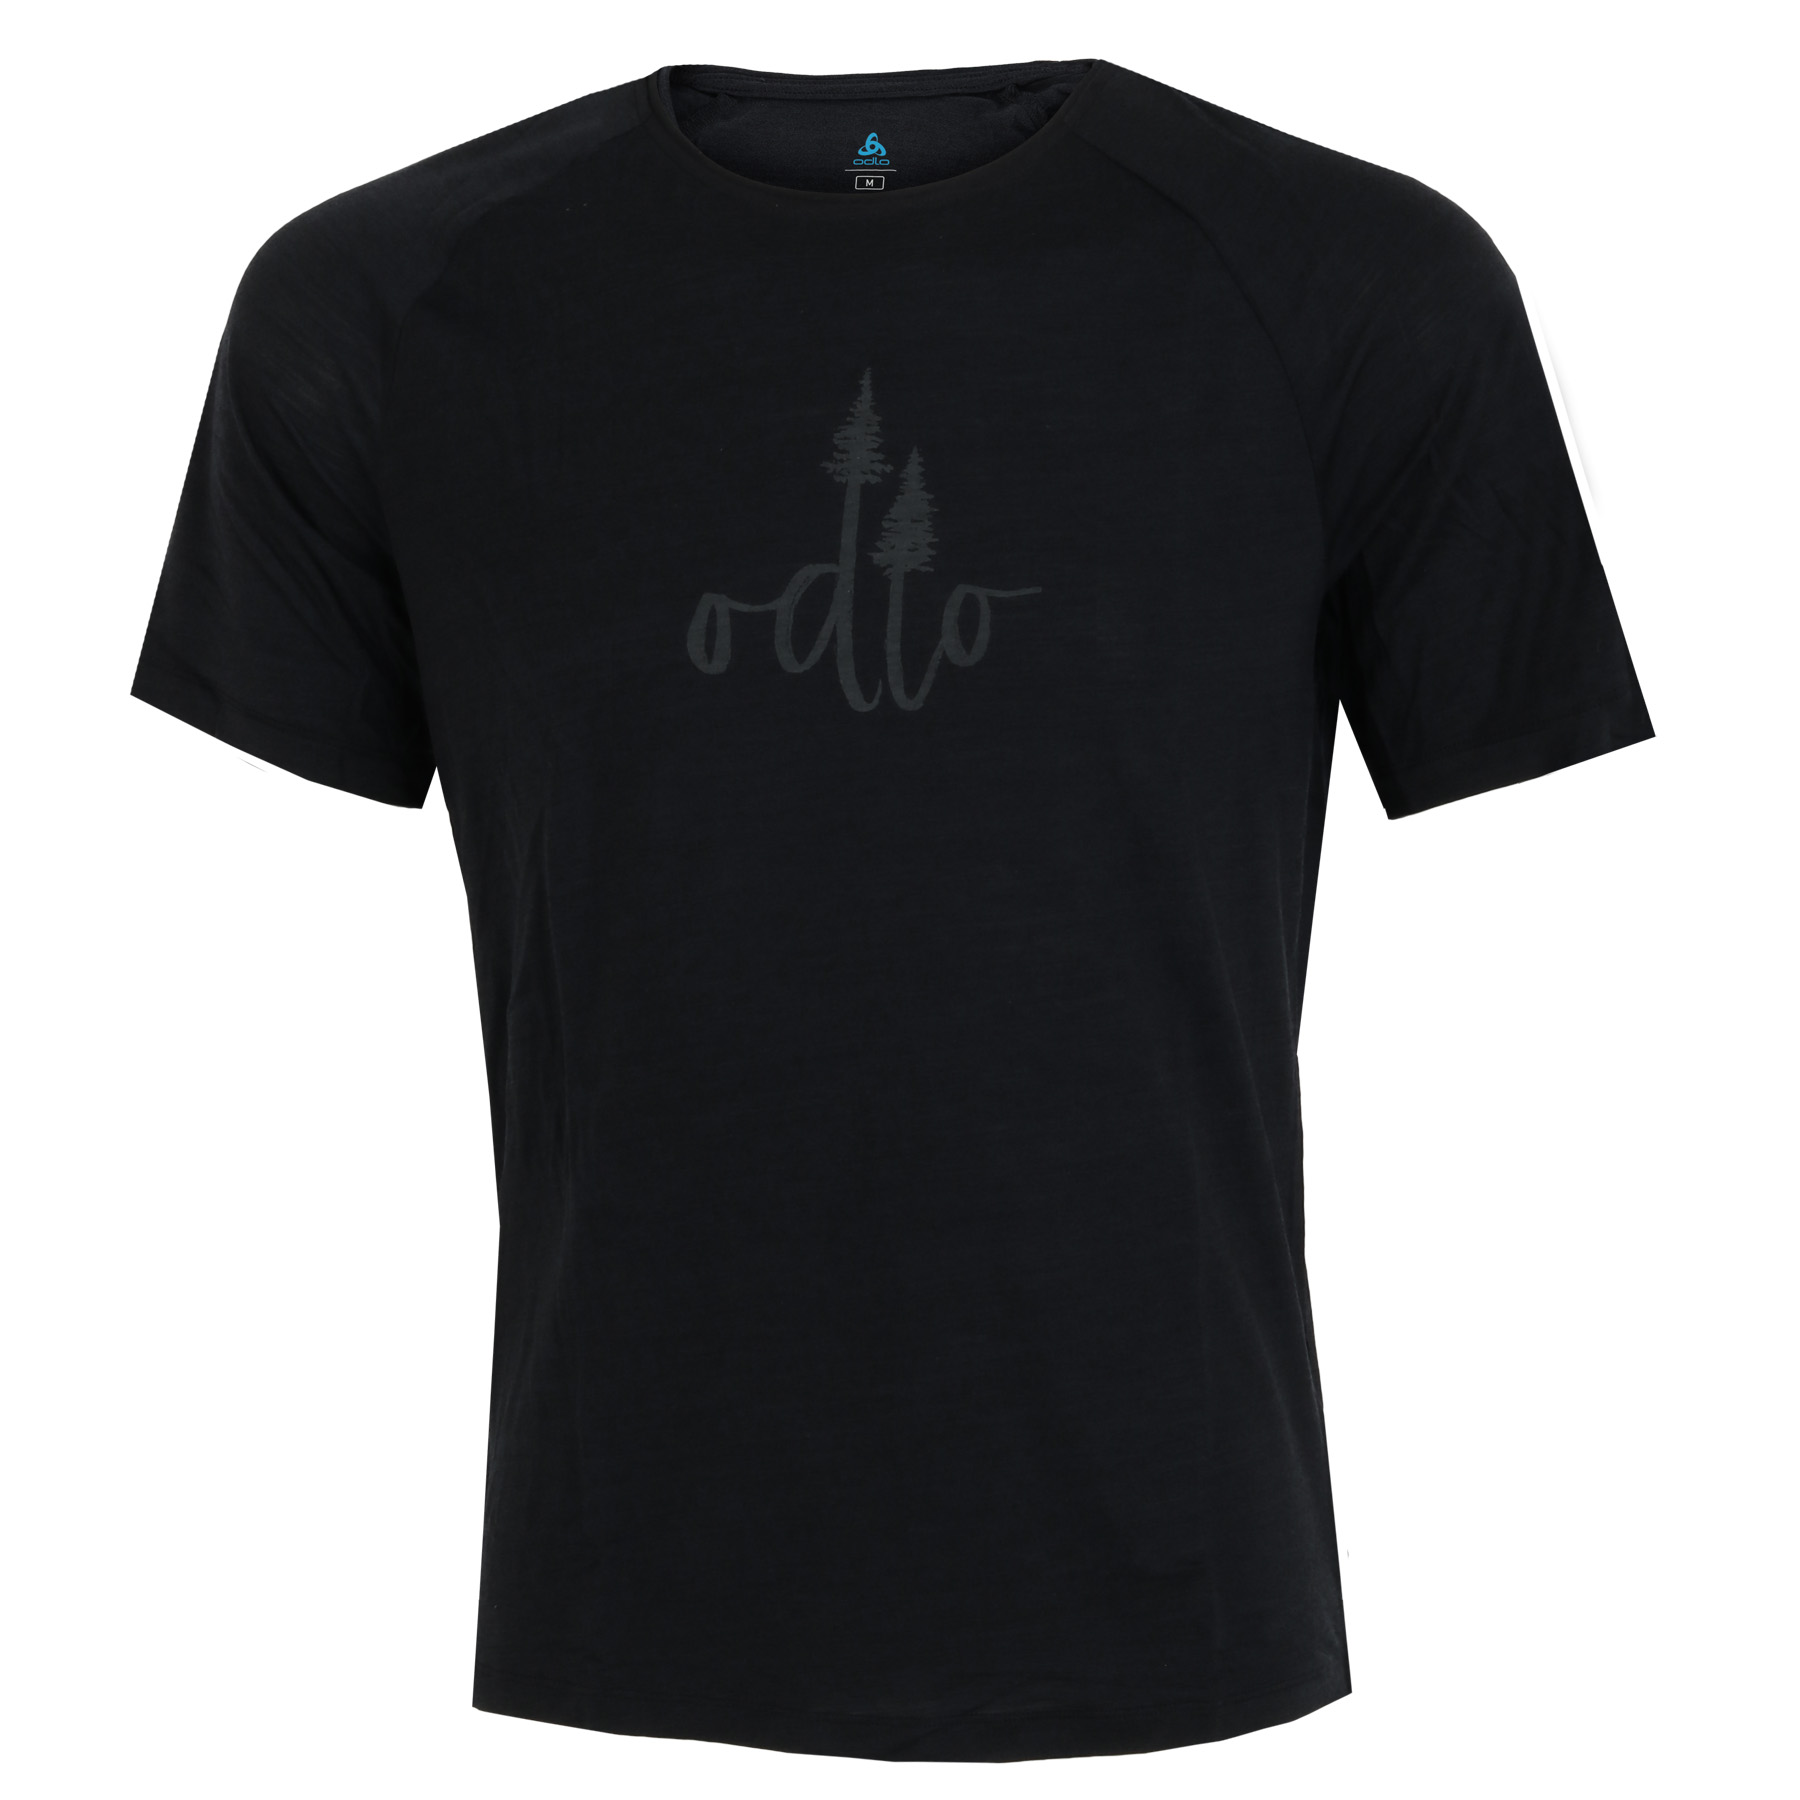 Produktbild von Odlo Herren Ascent Performance Wool 130 T-Shirt mit Baumprint - black melange